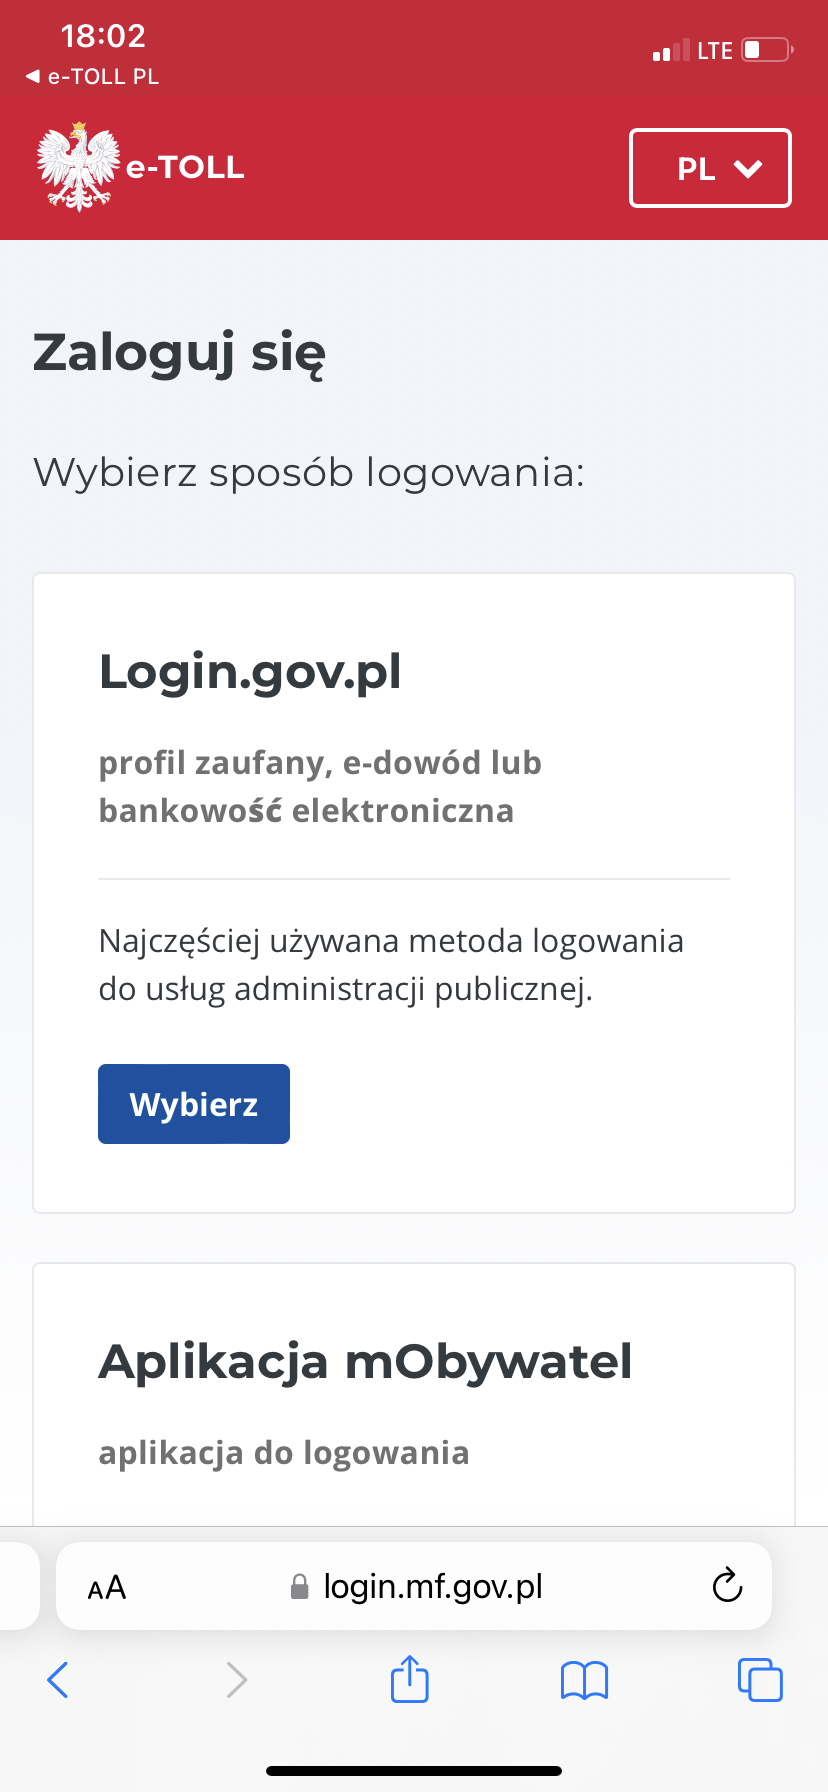 Czym jest e-TOLL gov.pl